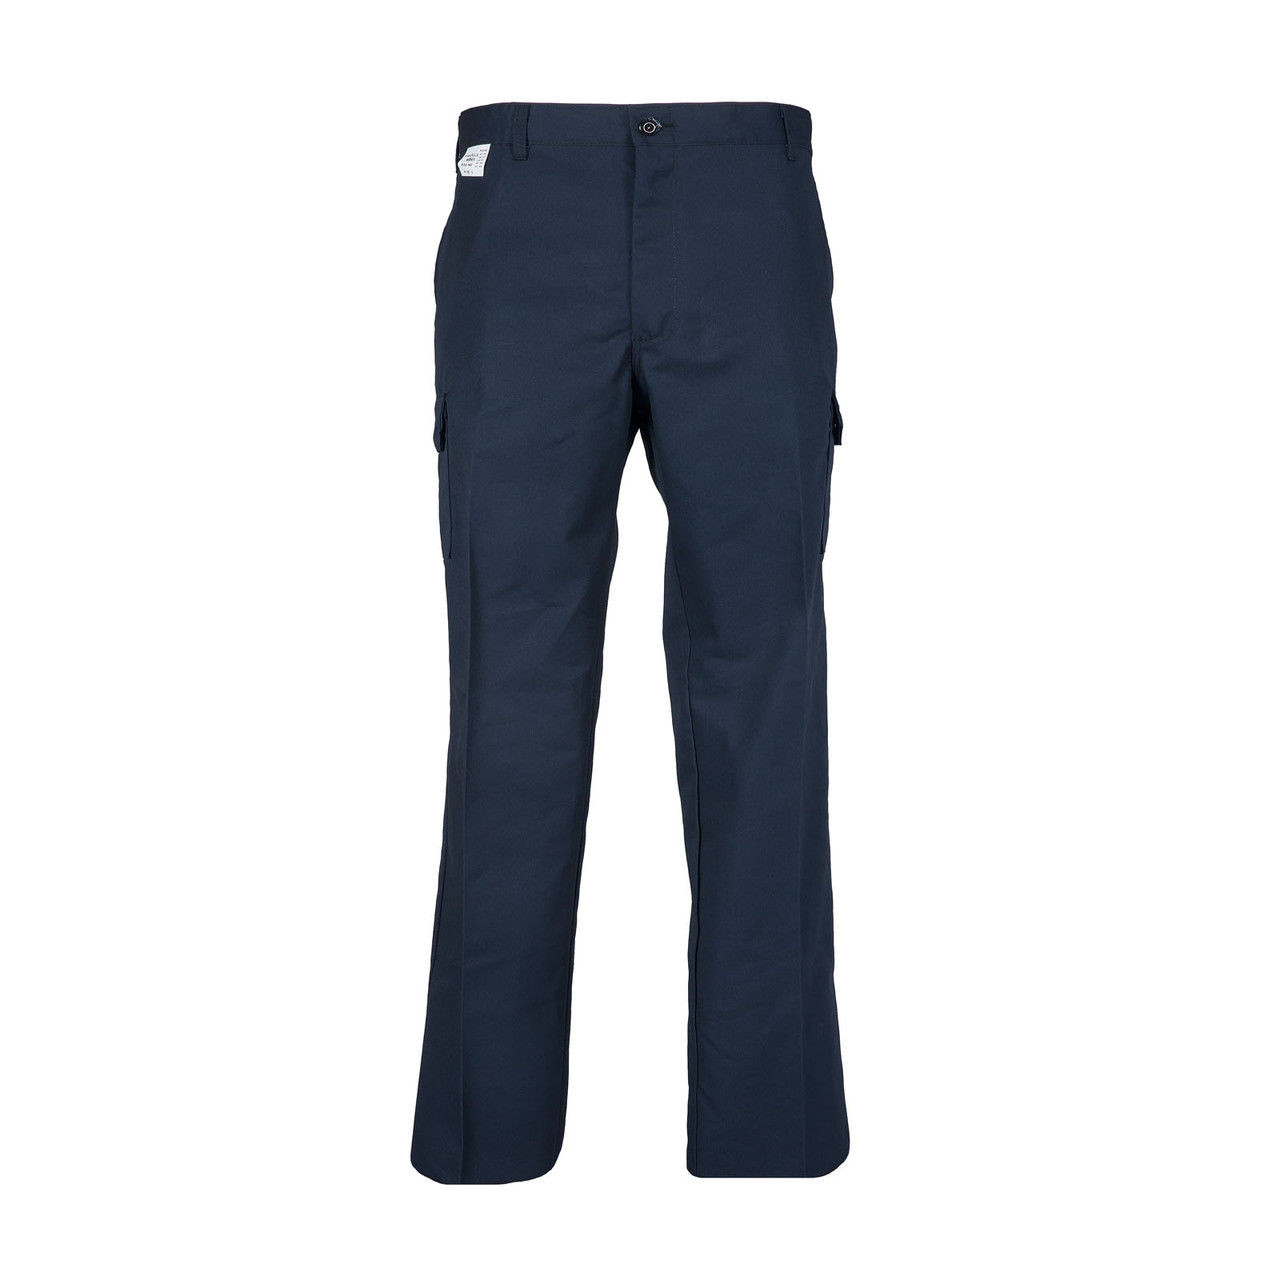 Navy blue Stacked Cargo Pants – Iridium Clothing Co